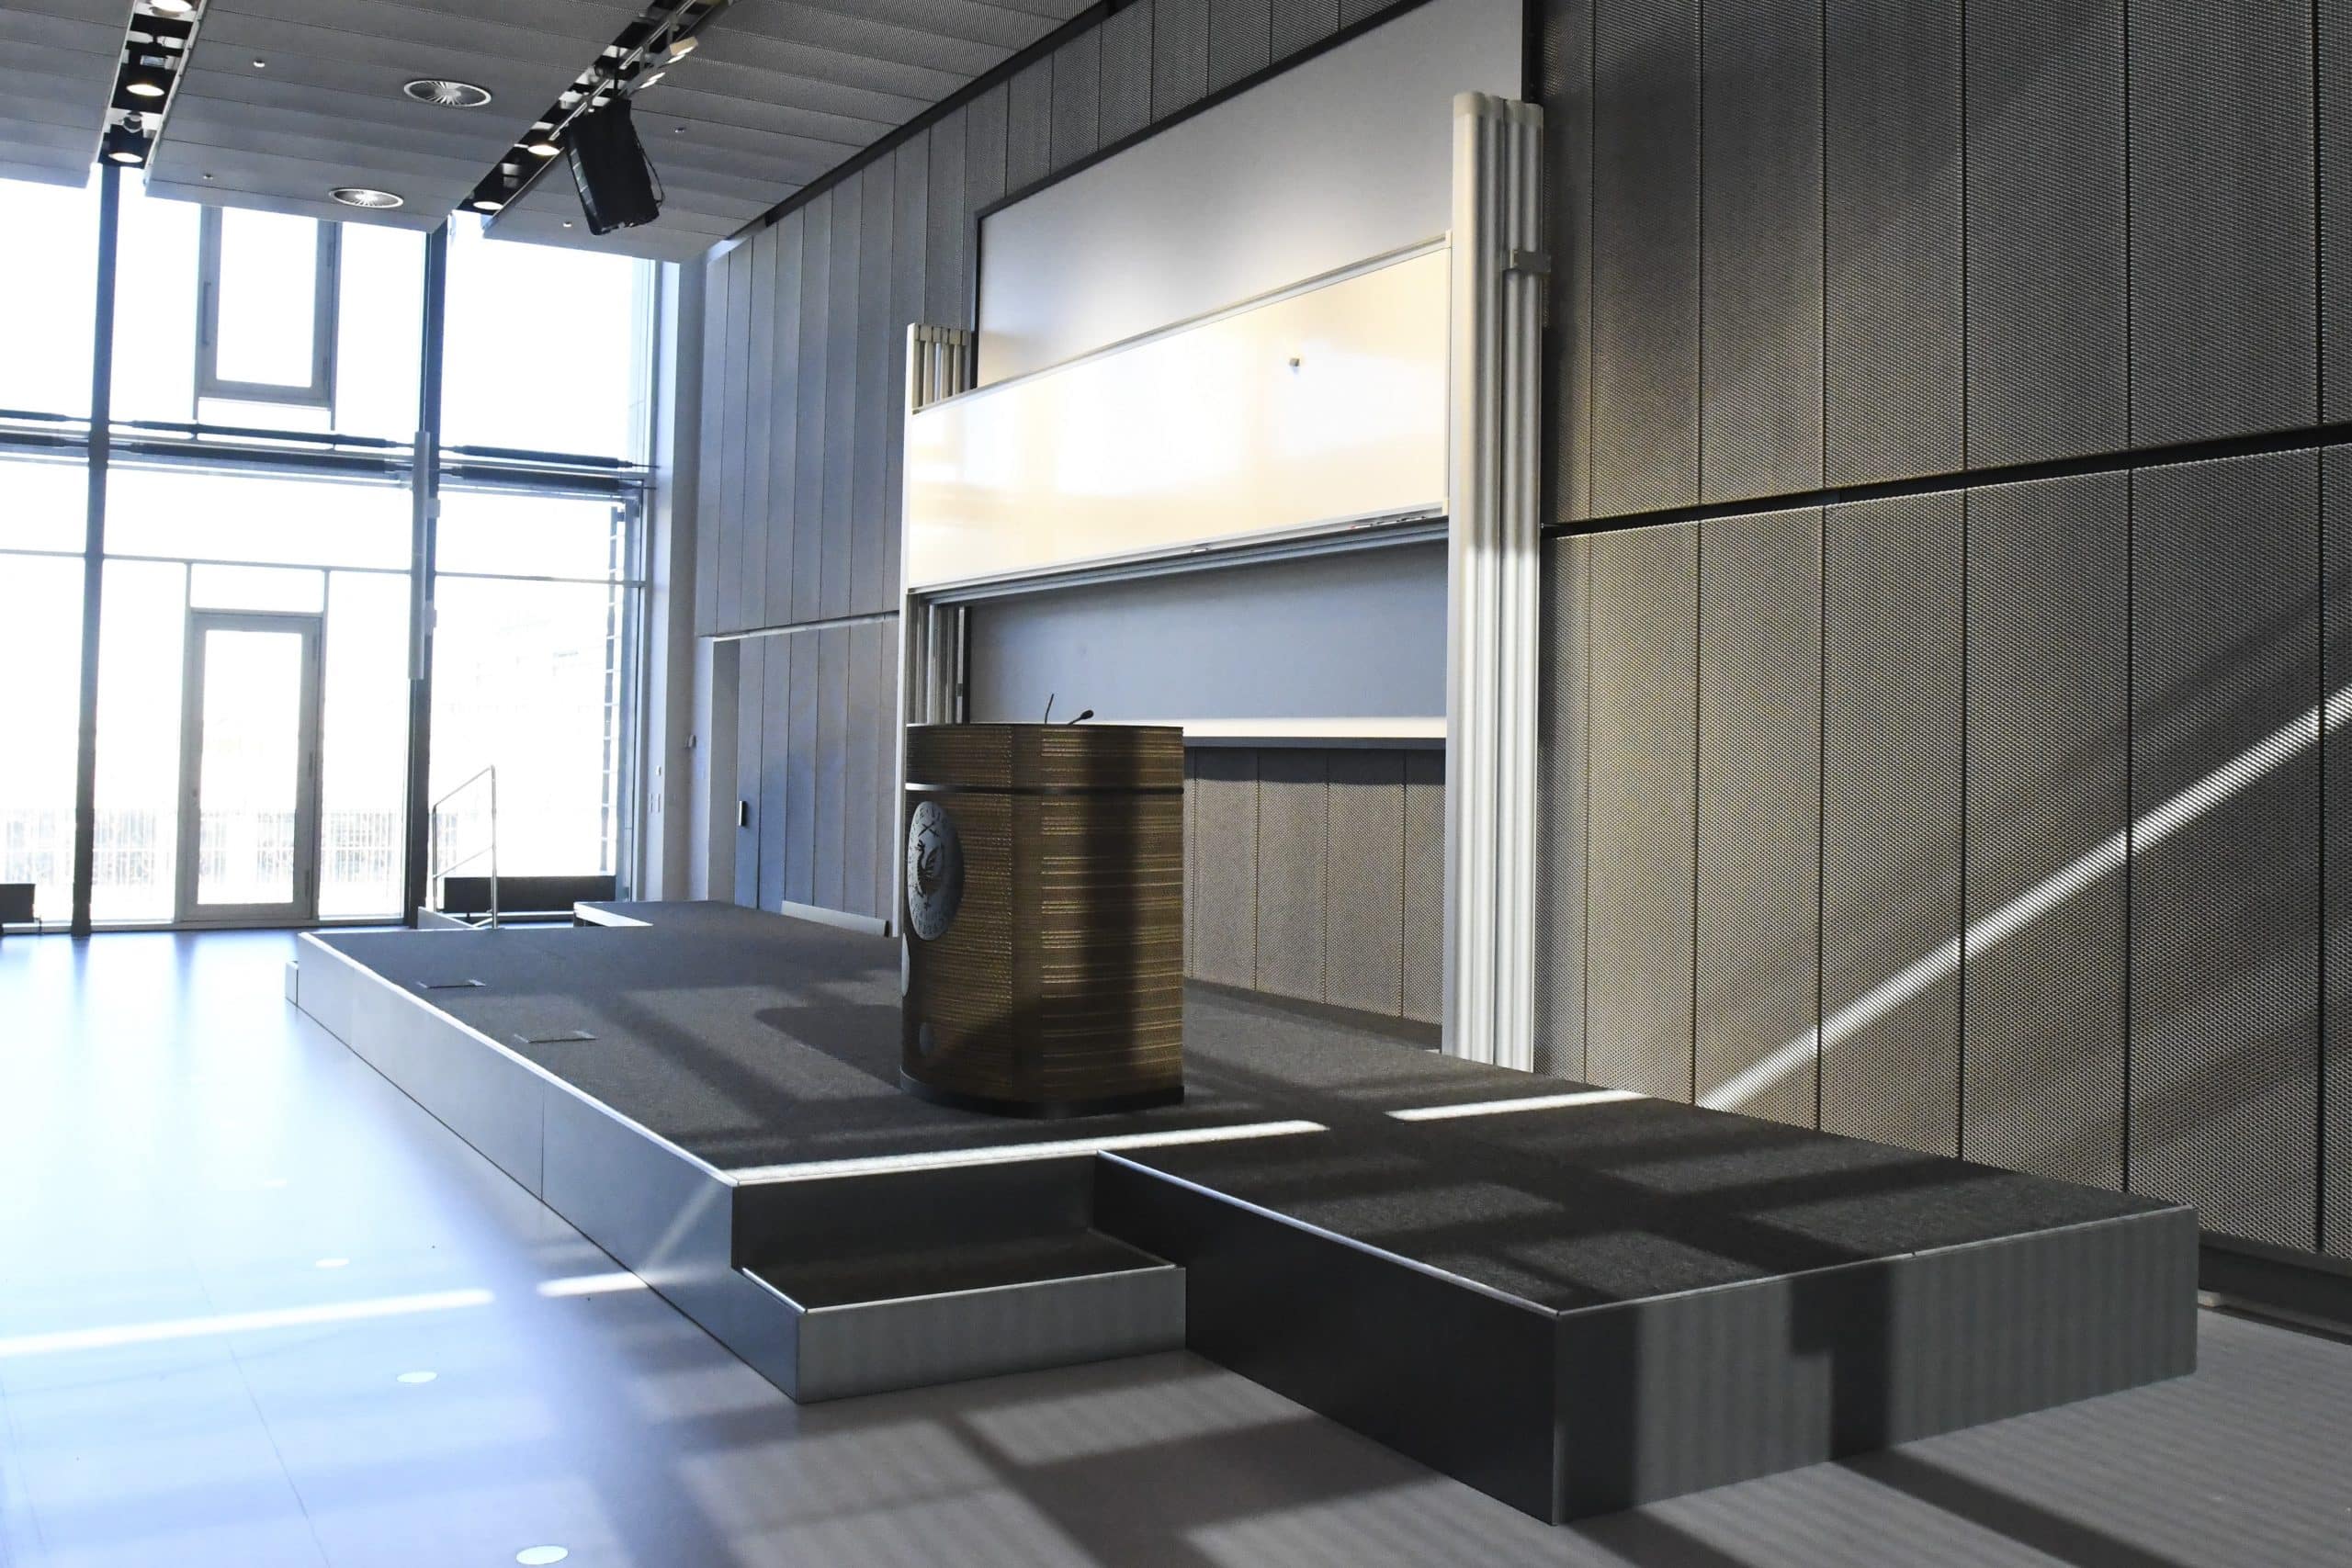 Eksklusiv scene med tæppe og faste fronter, lavet i samarbejde med arkitekt på Københavns Universitet.